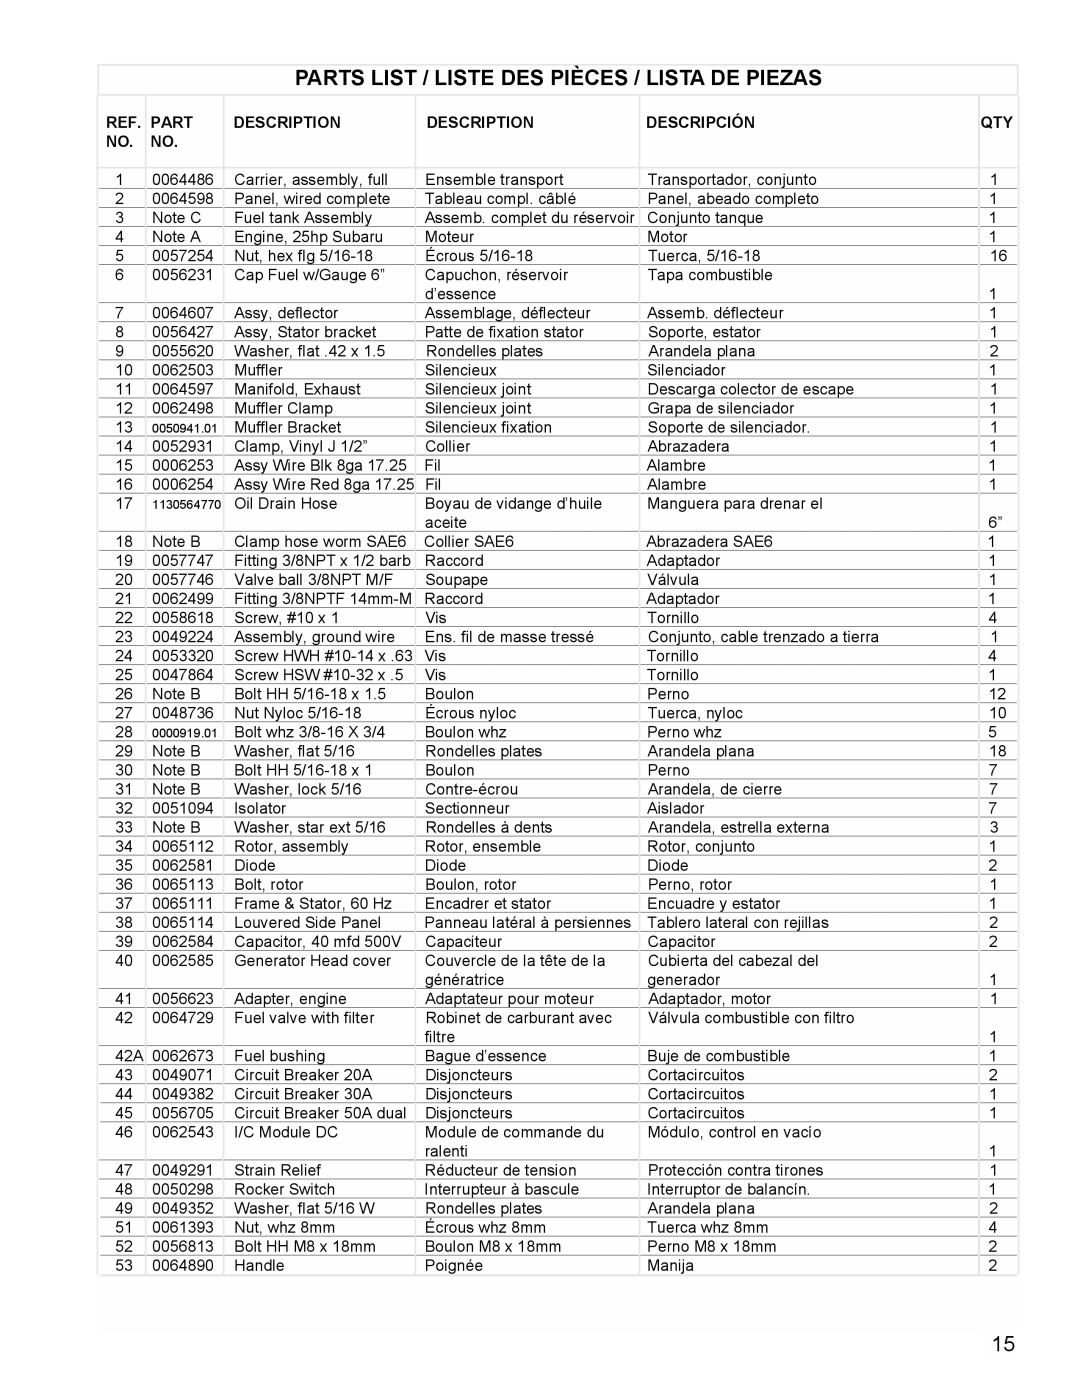 Powermate PM0601350 manual Parts List / Liste Des Pièces / Lista De Piezas, Assemb. complet du réservoir, Assy Wire Red 8ga 